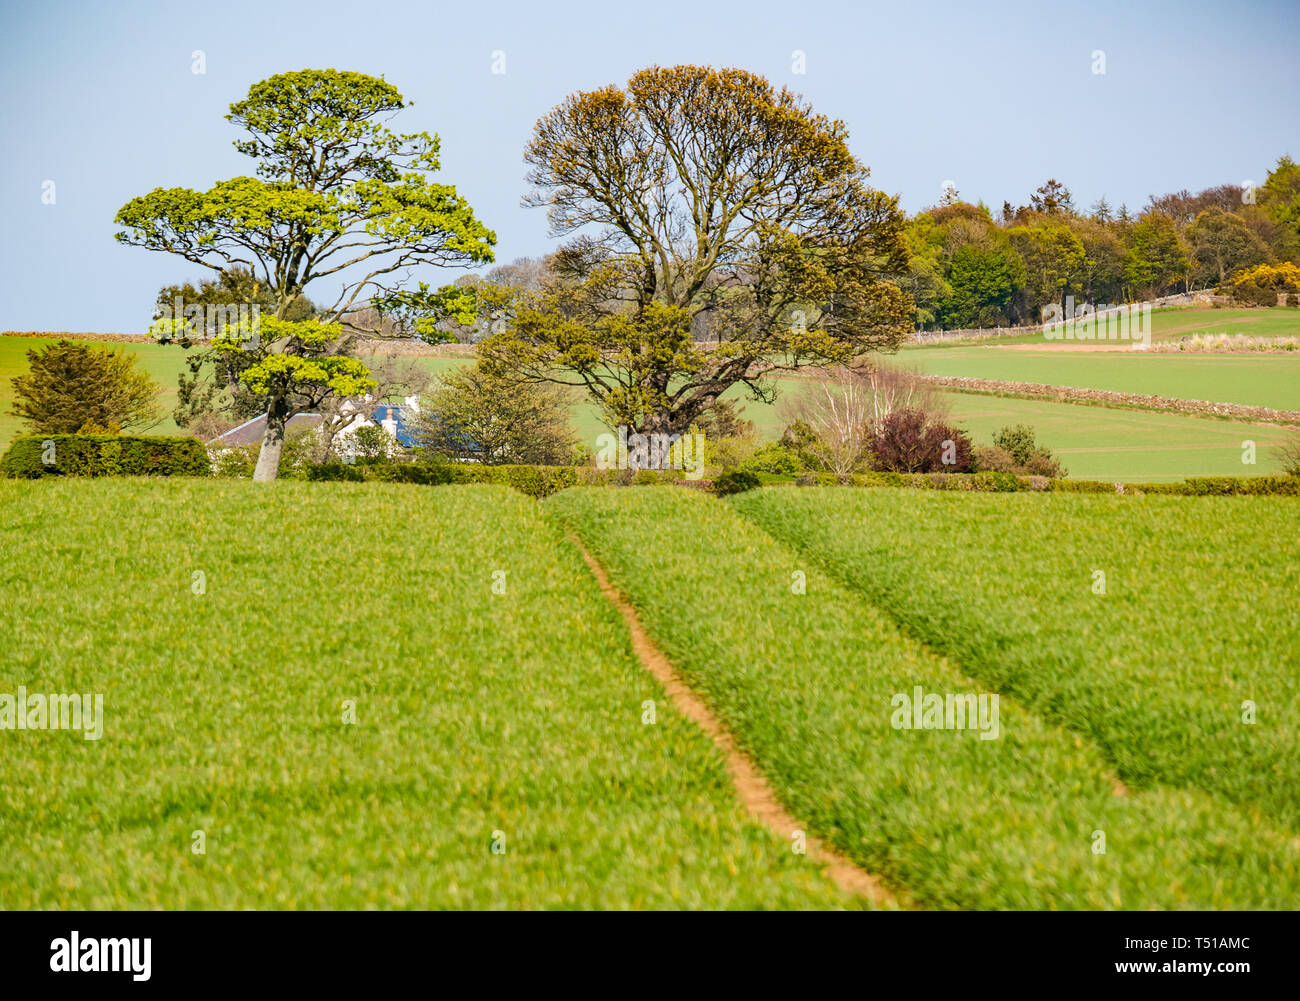 Empreinte de tracteur qui traverse la campagne verte dans le champ du paysage agricole vers cottage, East Lothian, Scotland, UK Banque D'Images